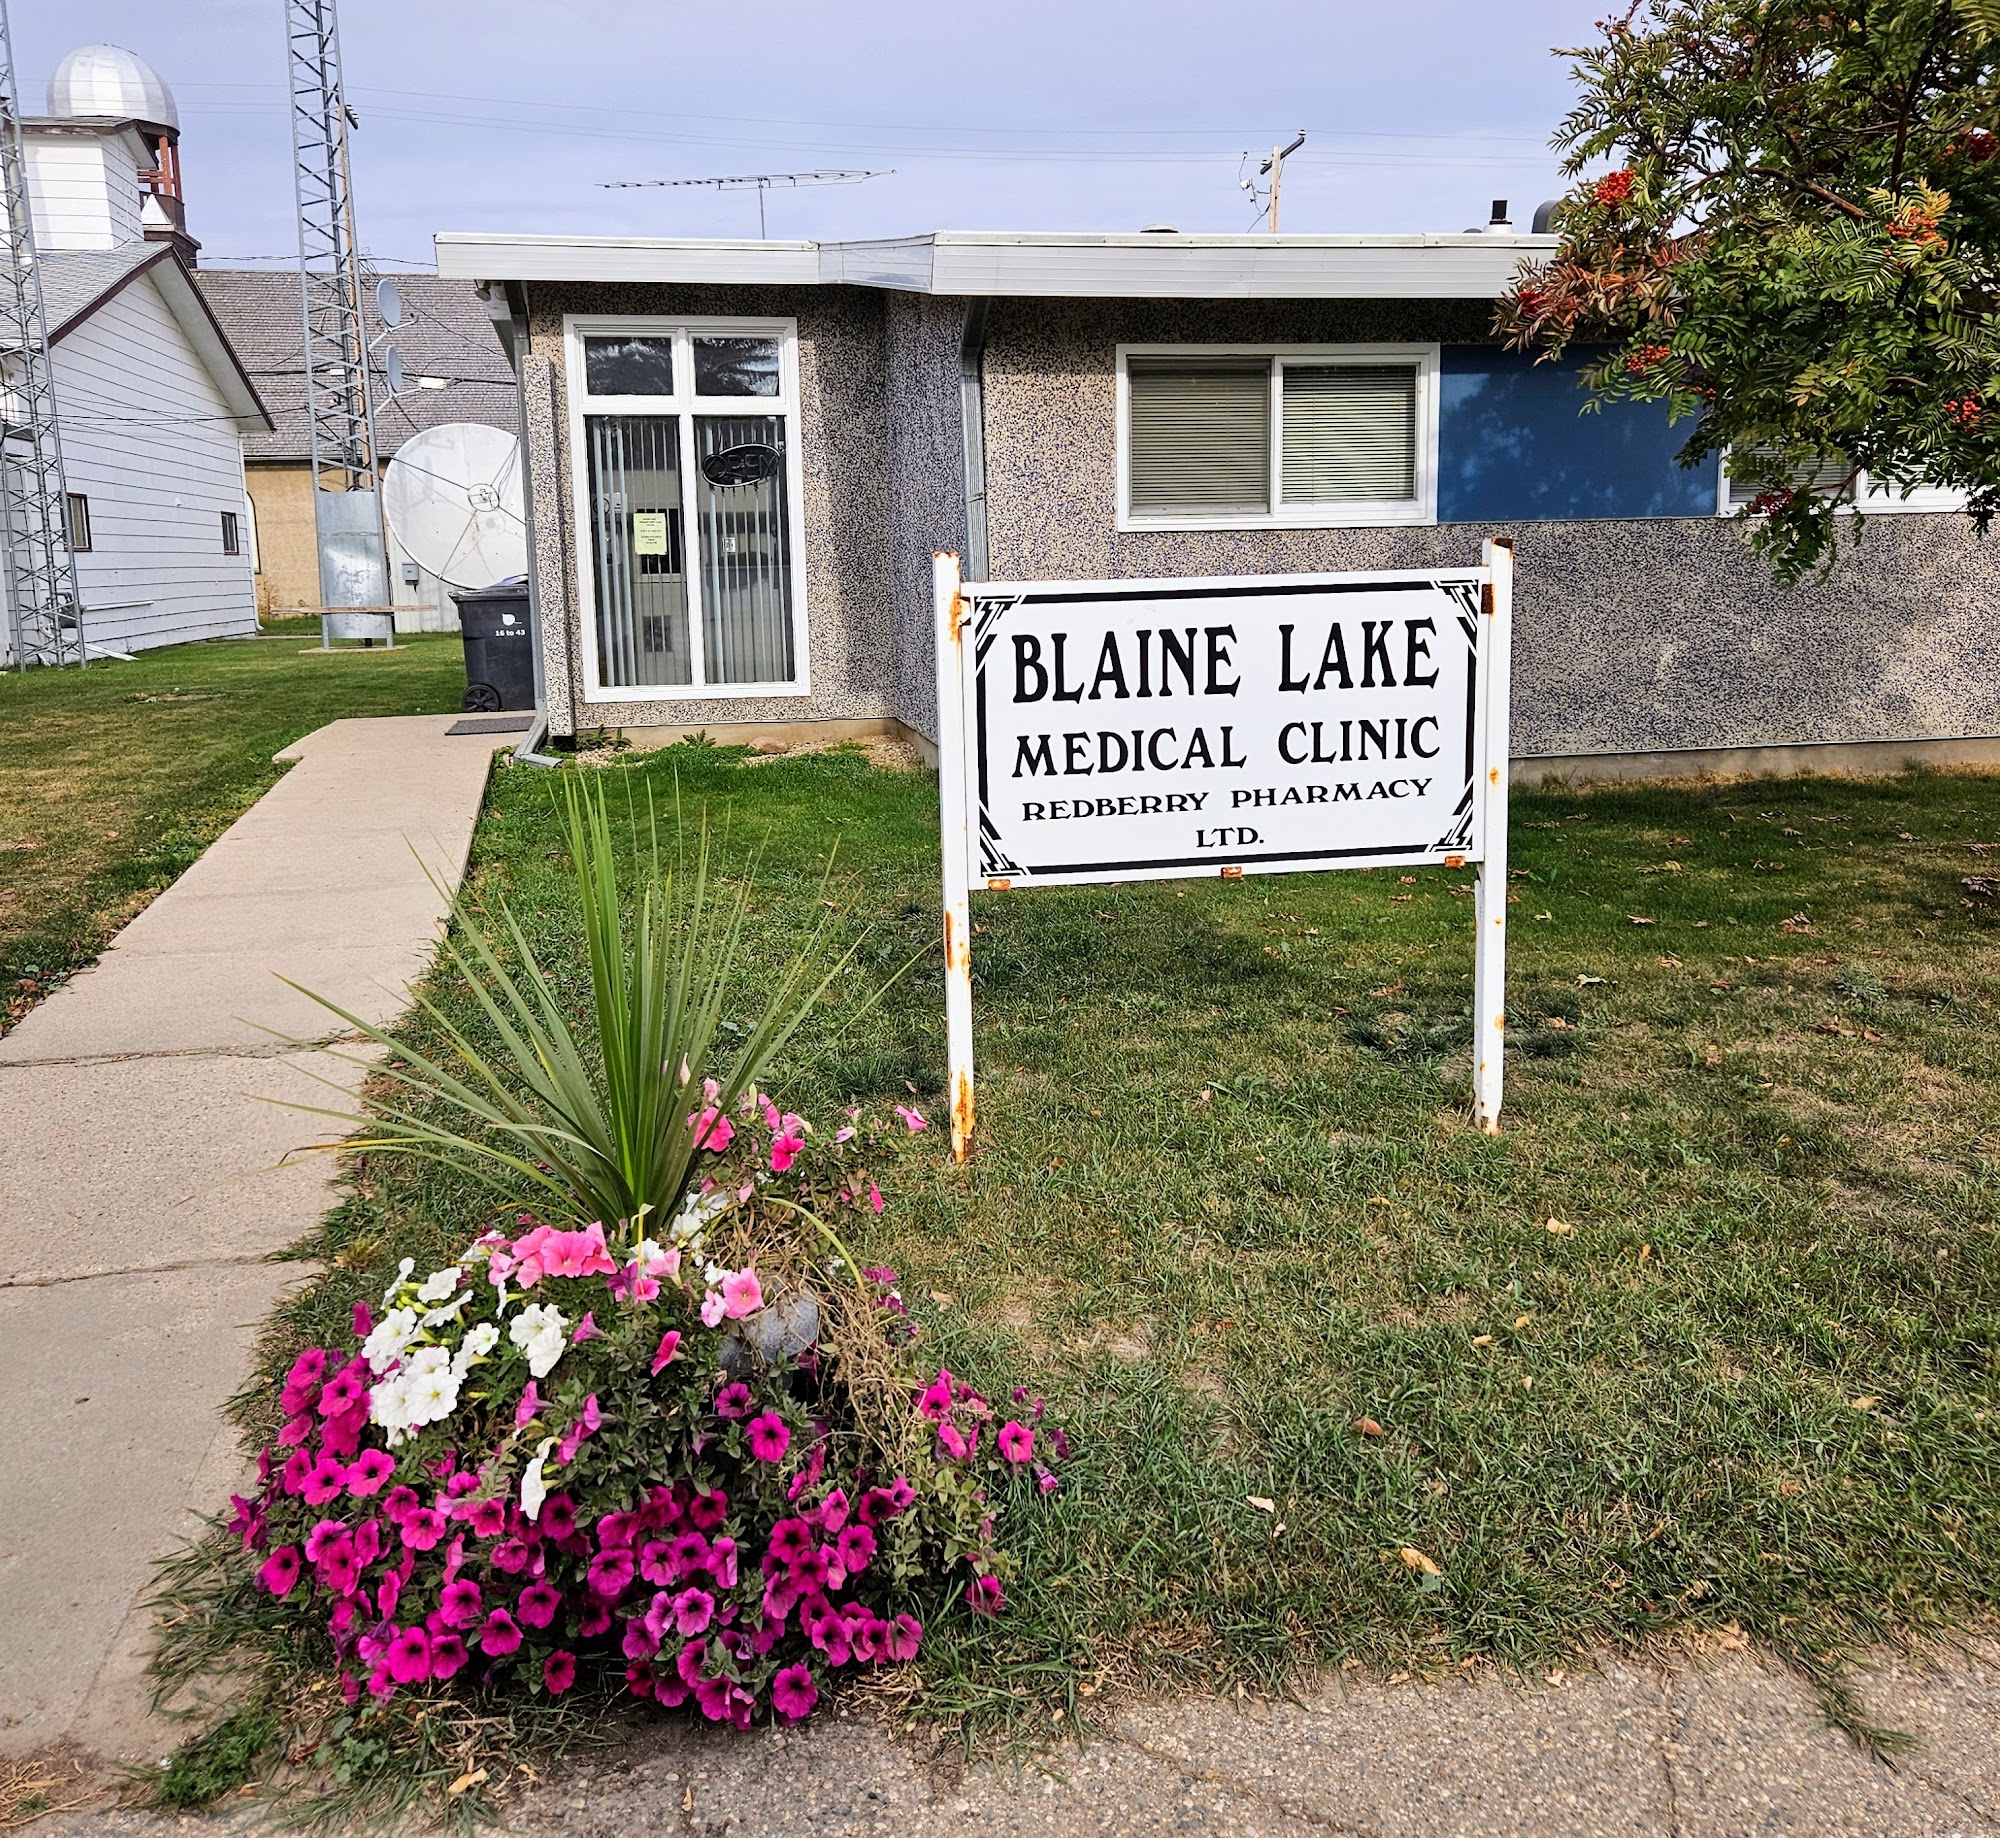 Blaine Lake Medical Clinic 307 Main St, Blaine Lake Saskatchewan S0J 0J0